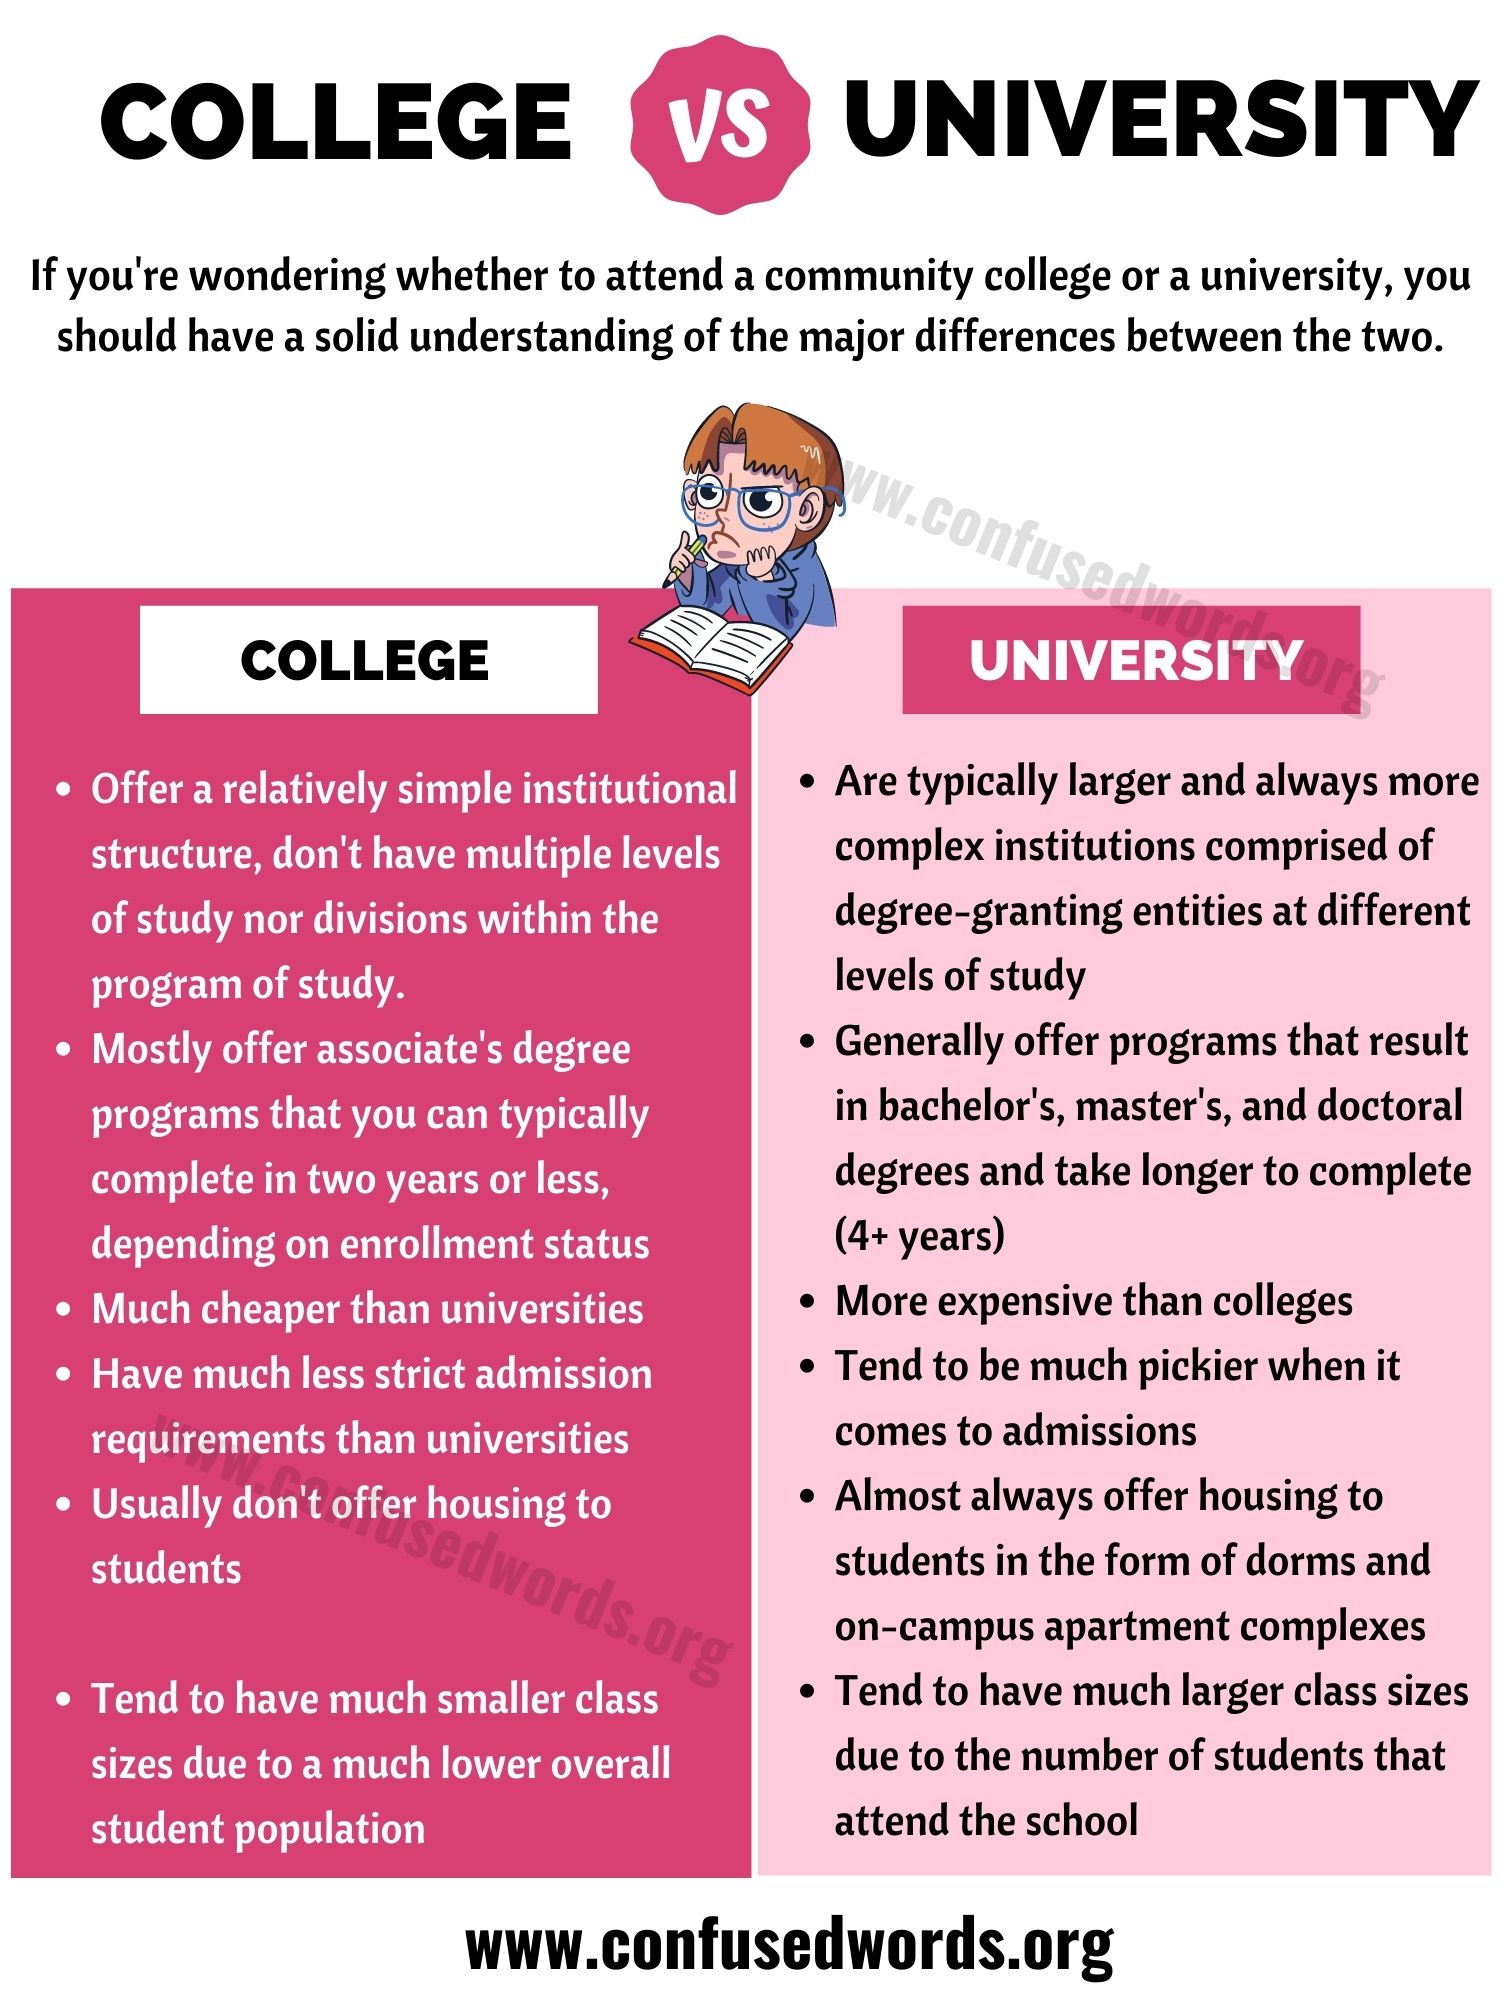 College vs university